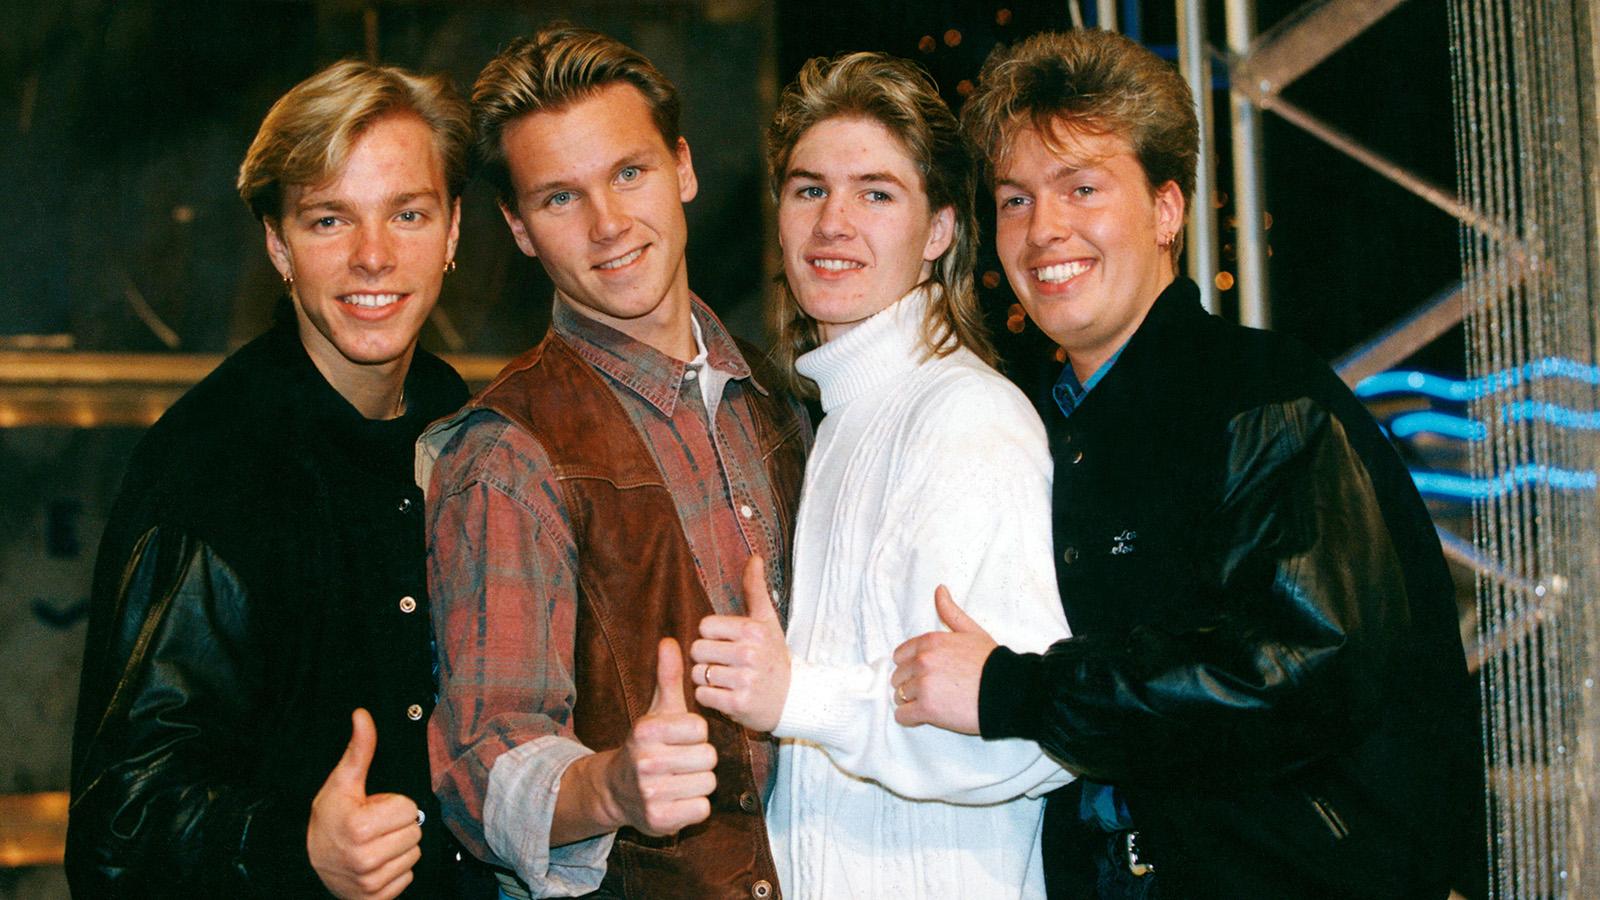 Arvingarna tävlade i Melodifestivalen 1993 med ”Eloise”.